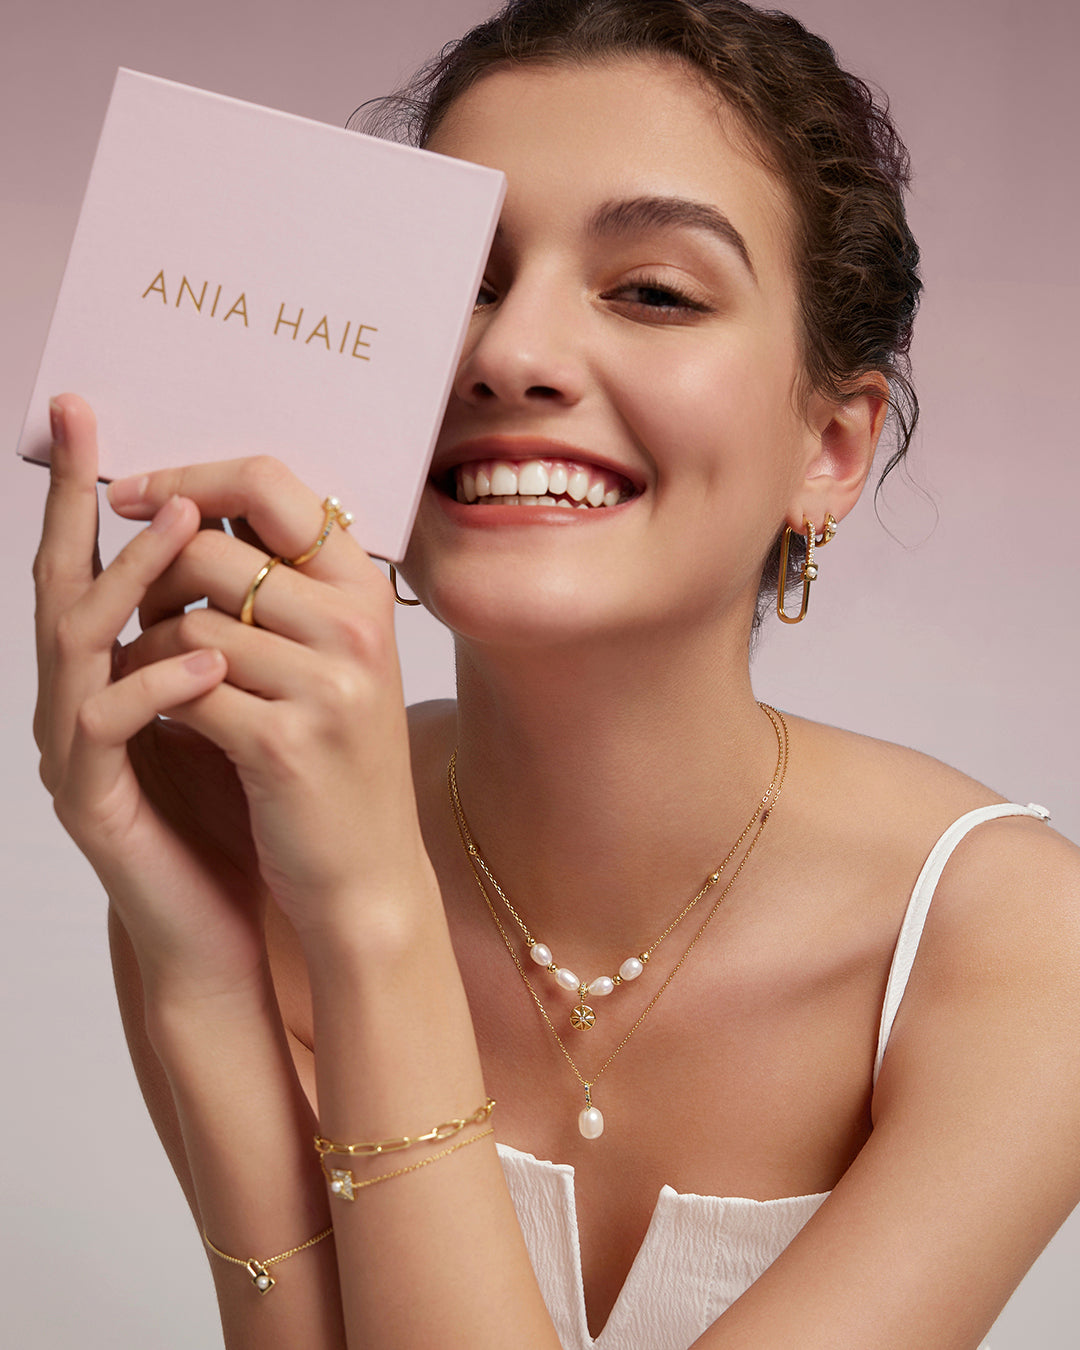 Brand Spotlight: Ania Haie